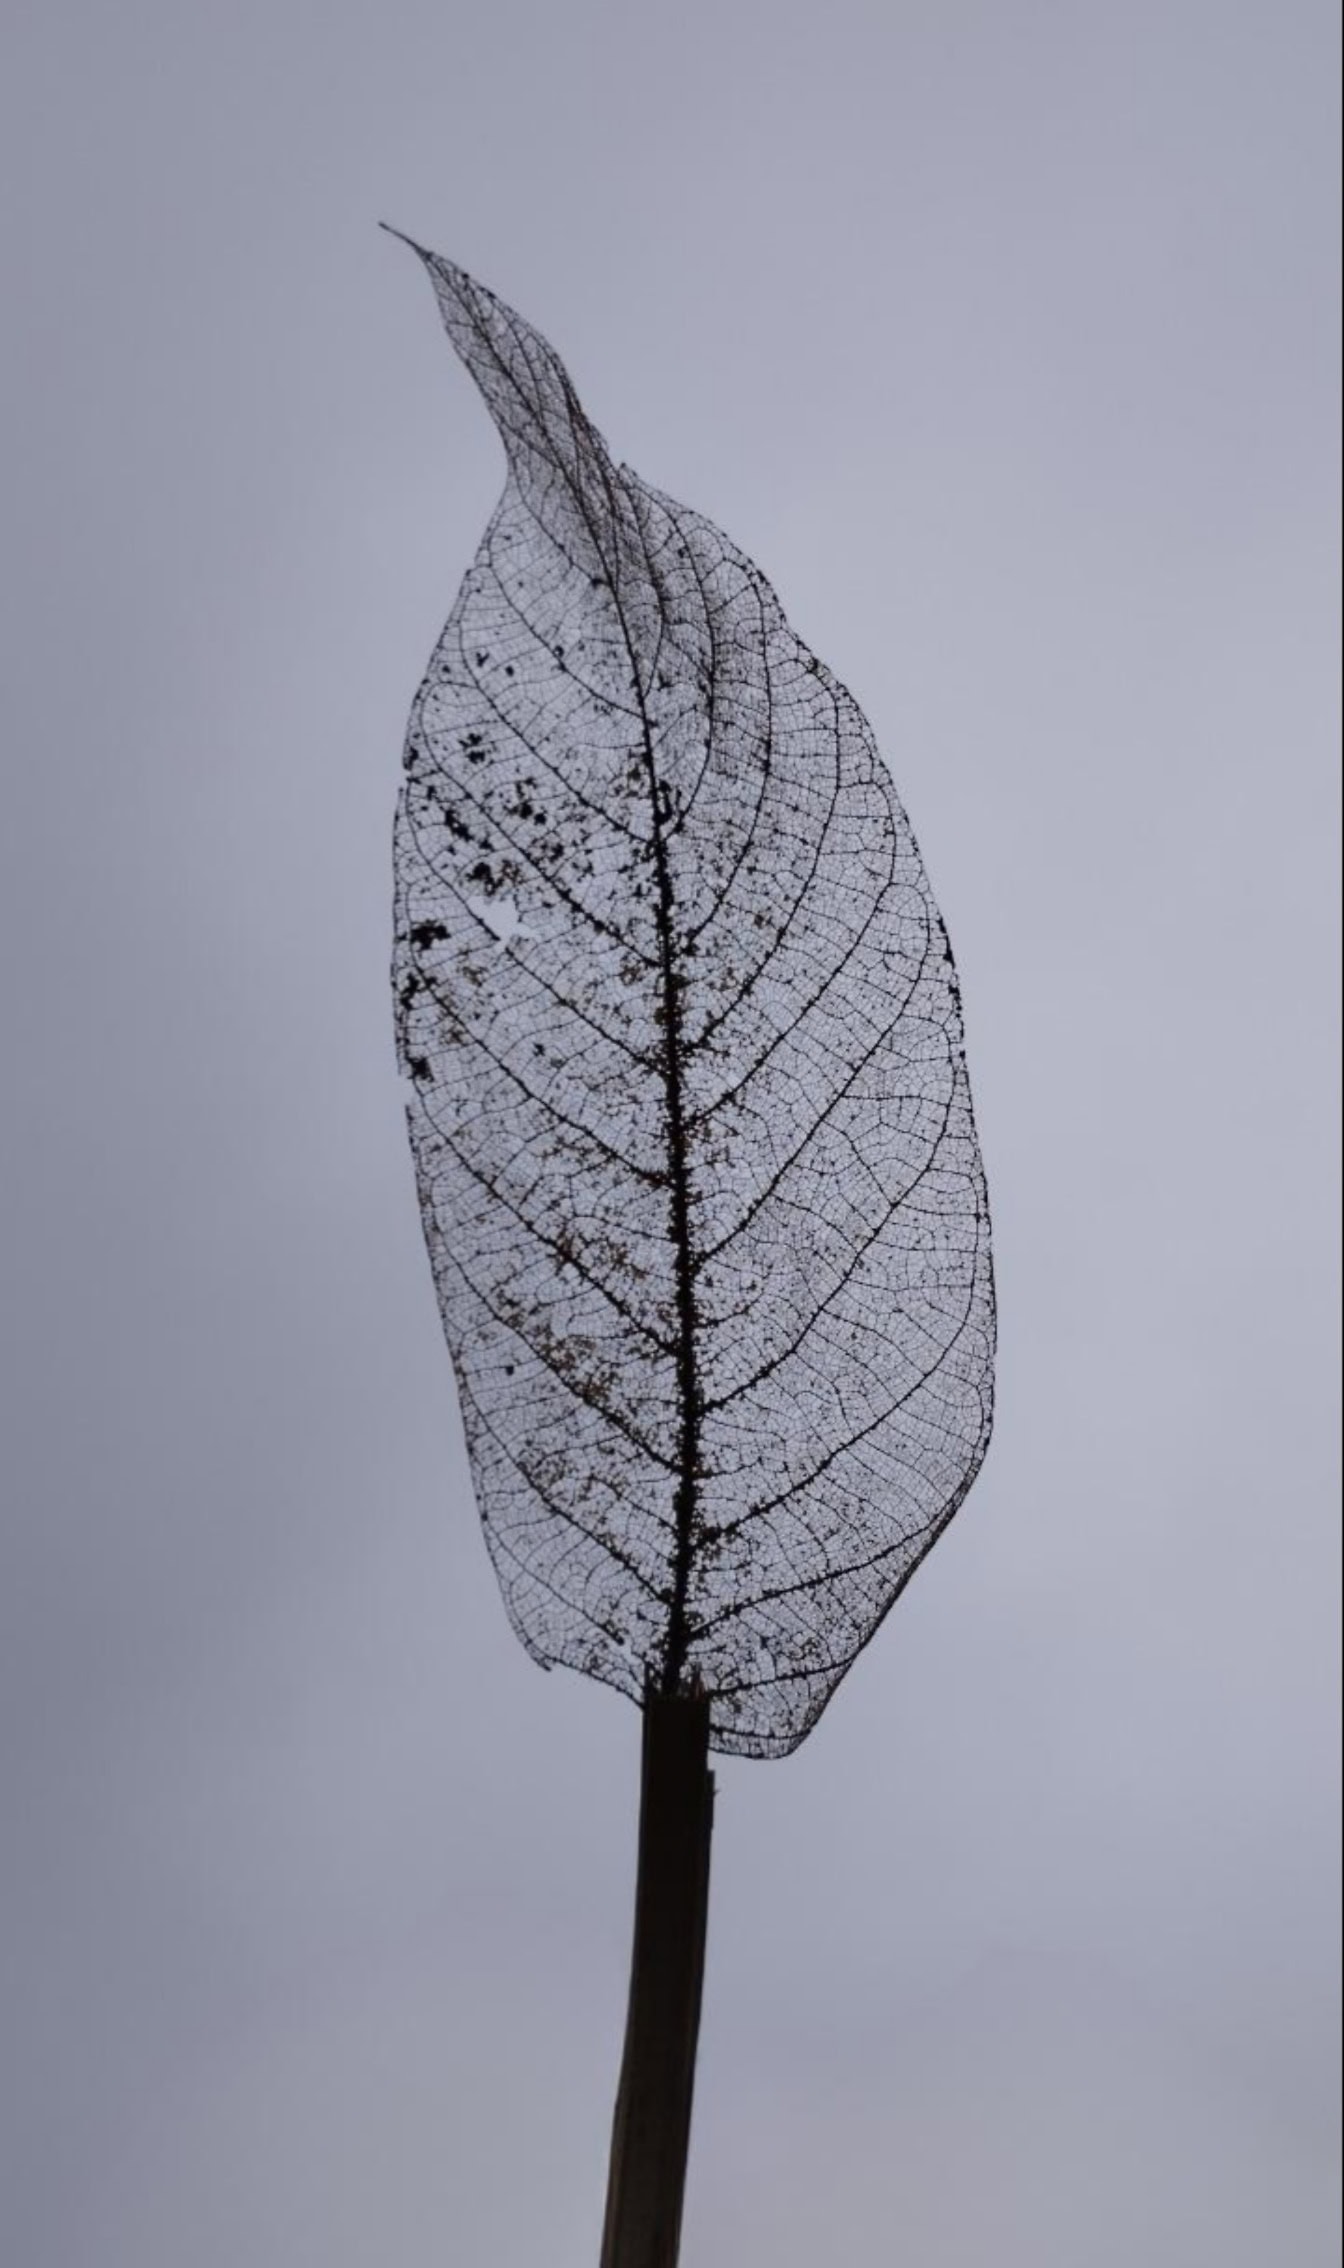 Transparant skelet van bladaders, zwart-witte close-upfoto van een ontbindend blad